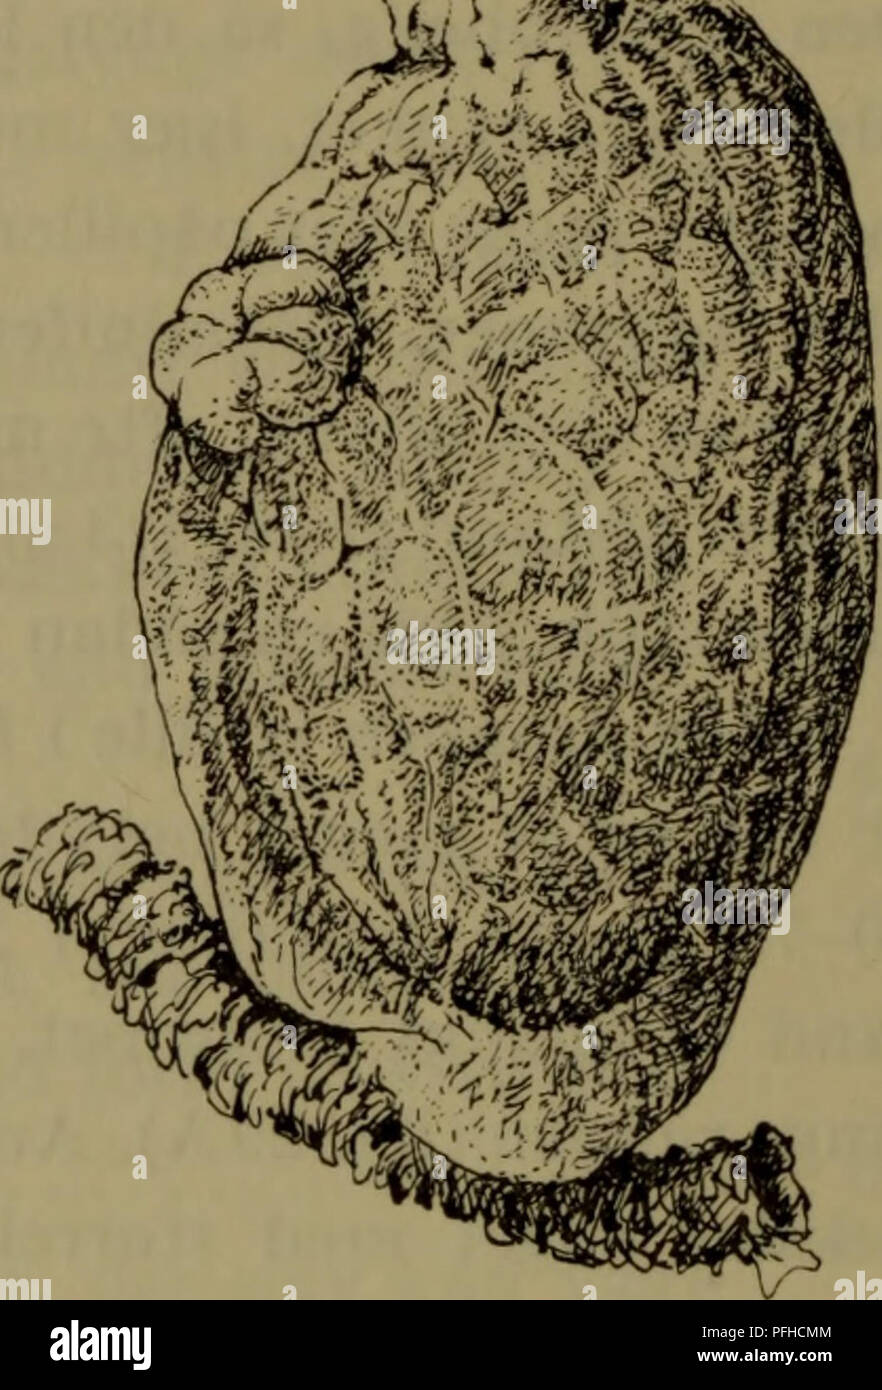 . Danmarks fauna; illustrerede haandbøger over den danske dyreverden... . Fig. 33*. Ascidia obliqua. Fig. 34*. Ascidia callosa. pigt underlag for andre søpunge, f. eks. Boltenia, Styela- arter og koloniale former. Den er almindeligst på 50-200 m dybde og mens den kun undtagelsesvis lever på ringere dybde, kan den forekomme helt ned til 1200 m. I gællesækken lever flere arter af semiparasitiske copepoder, almindeligst den lille ægformede Buprorusloveni. I kappe- hulen træffes ofte en 1-3 cm lang, bleggul nemertin, Gonone- mertes parasita; da den kun findes hos denne enkelte art af slægten, er d Stock Photo